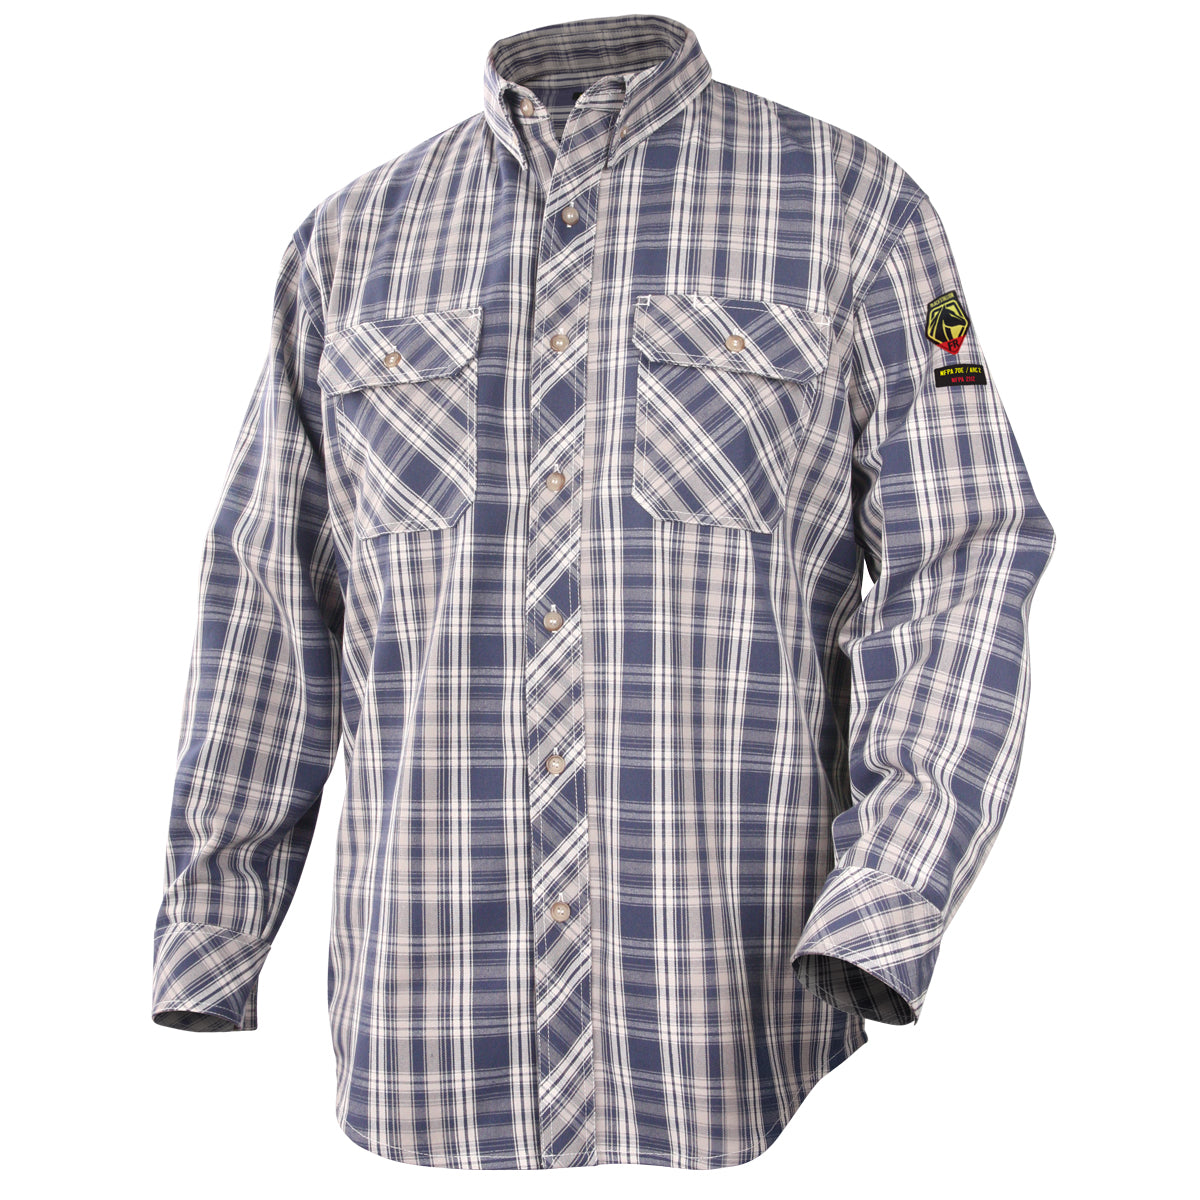 Revco WF2110-PB AR/FR Cotton Work Shirt, Blue Plaid